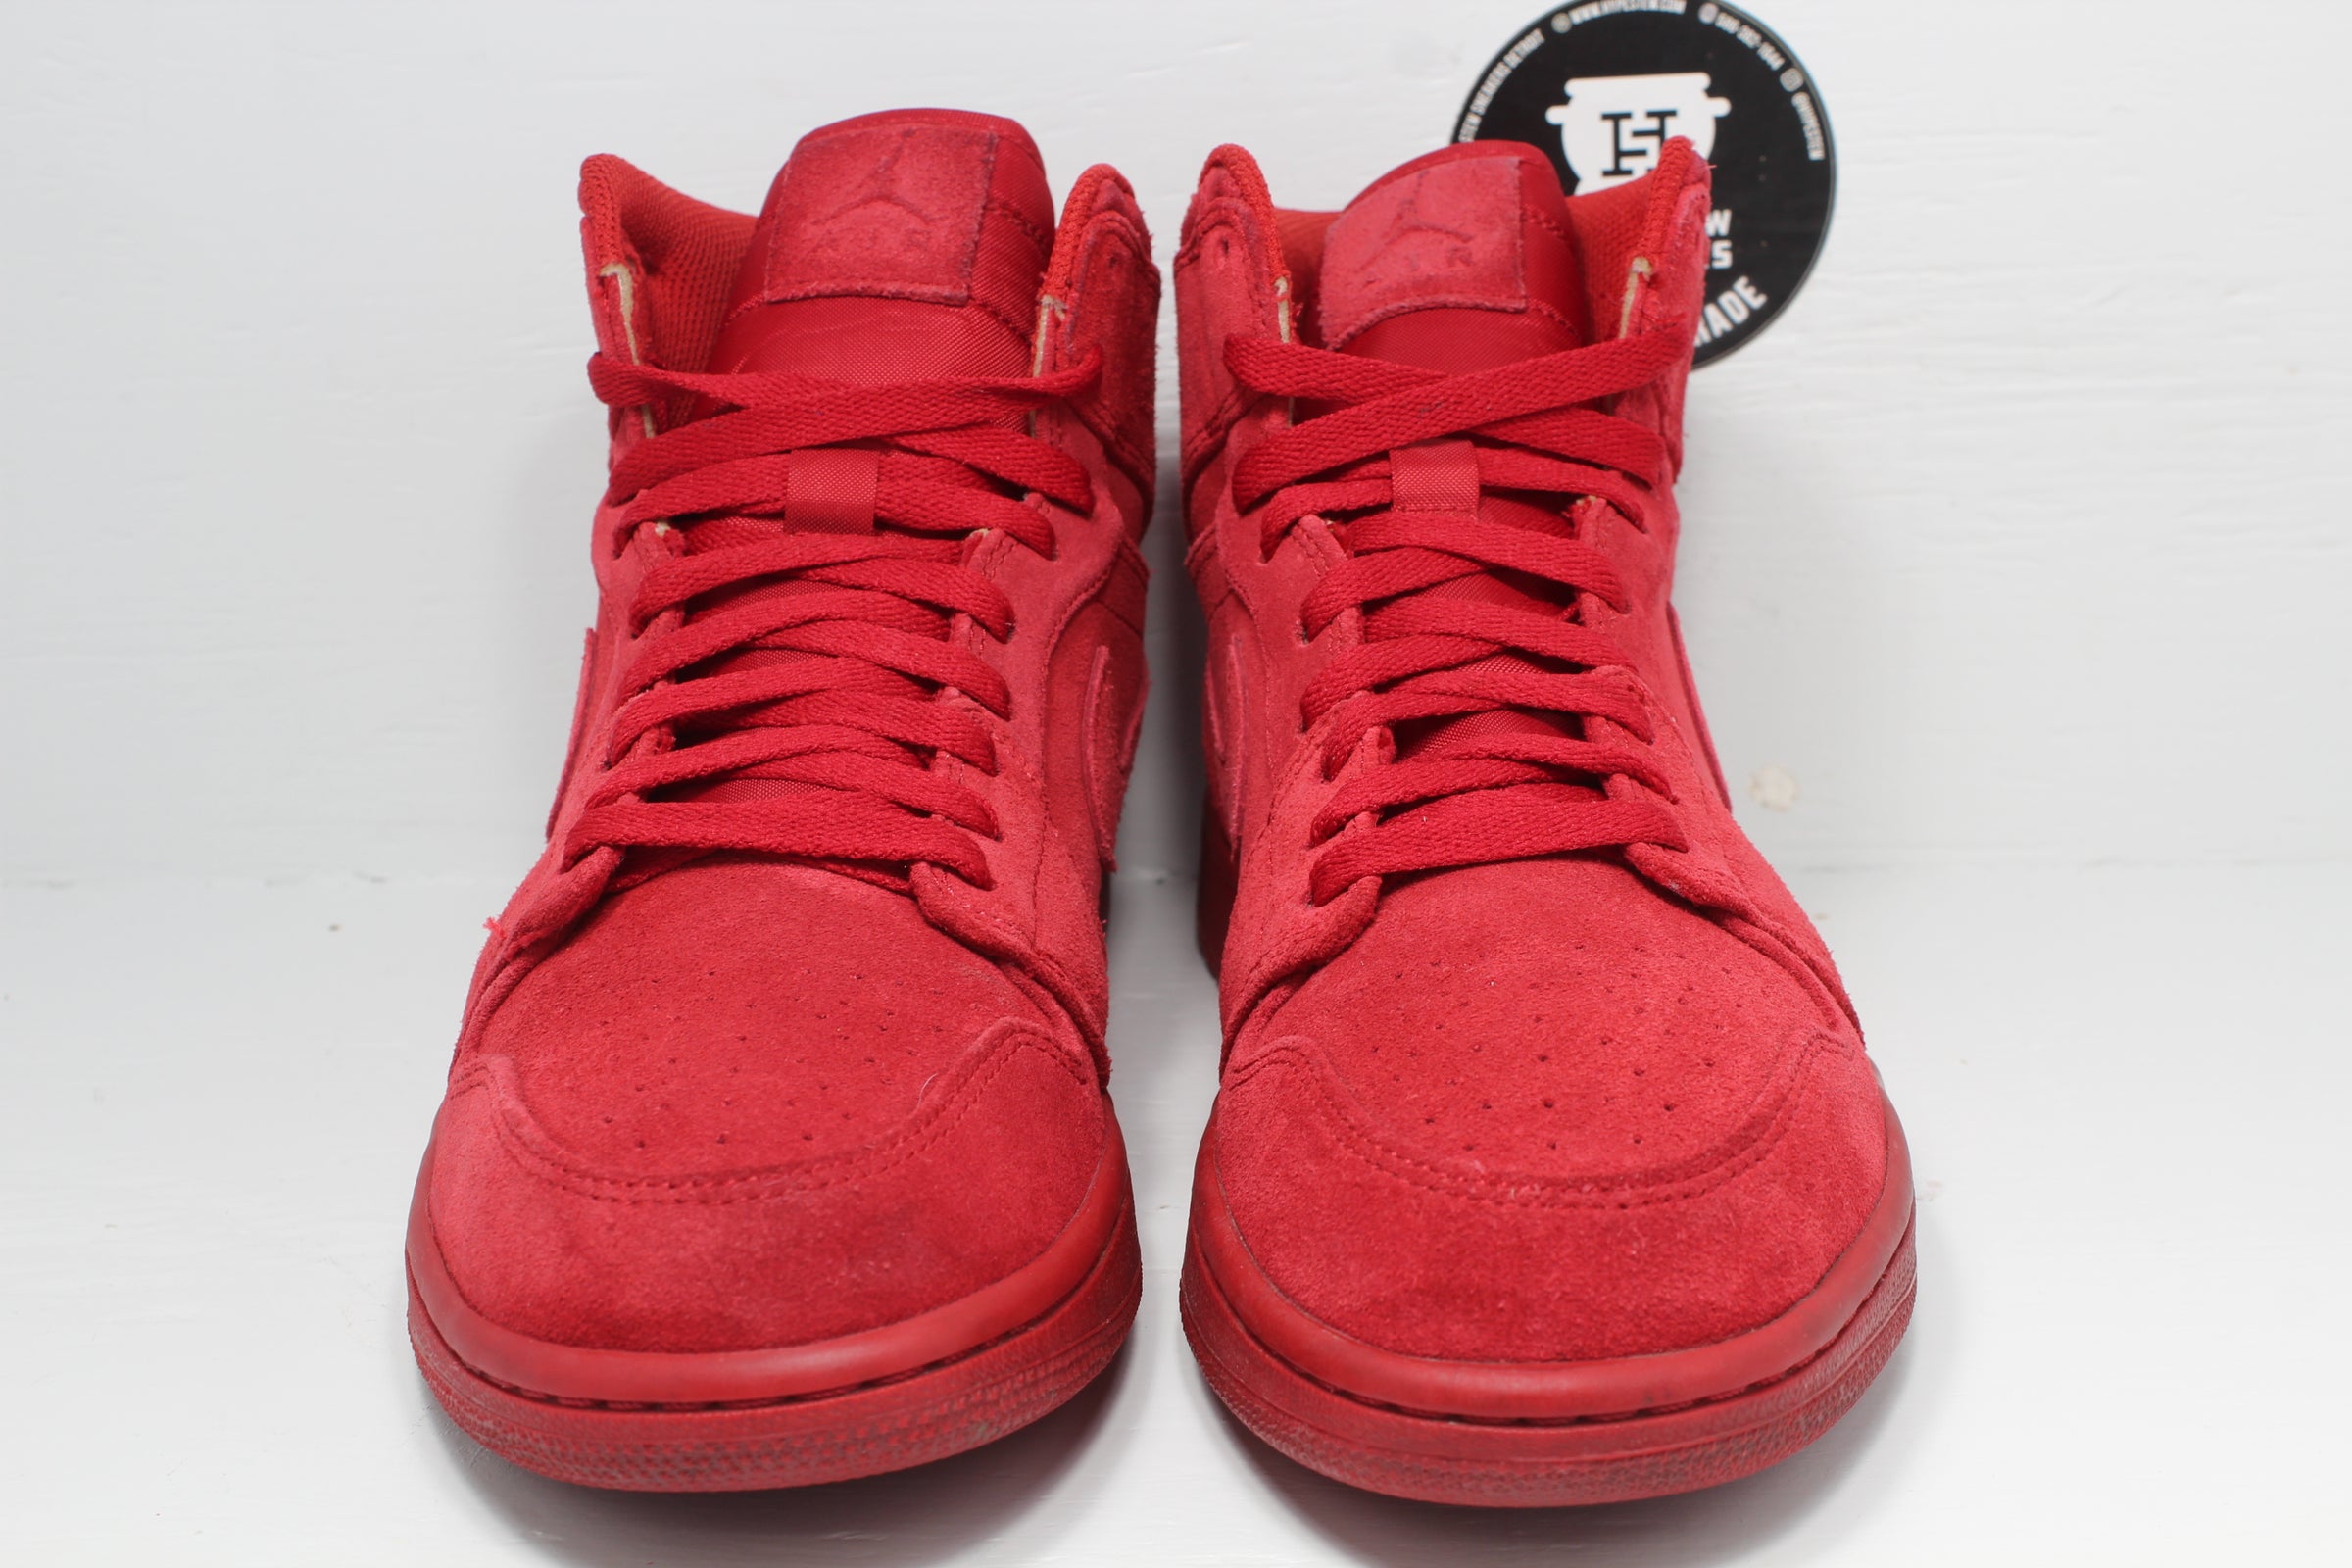 Nike Air Jordan High Red Suede | Hype Sneakers Detroit